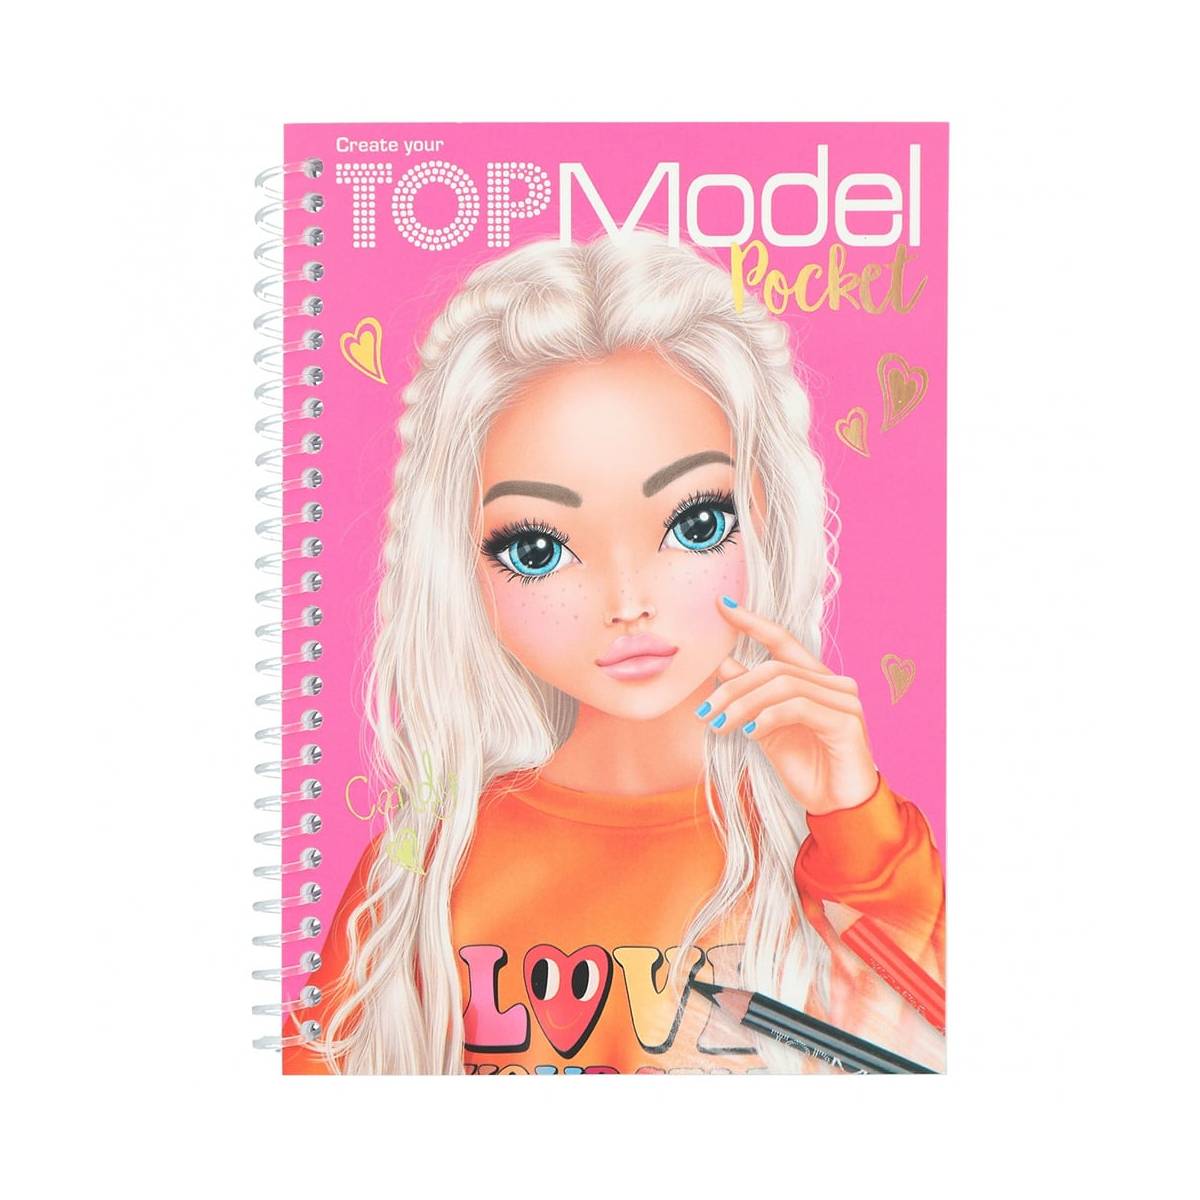 TOPModel Pocket Coloring Book